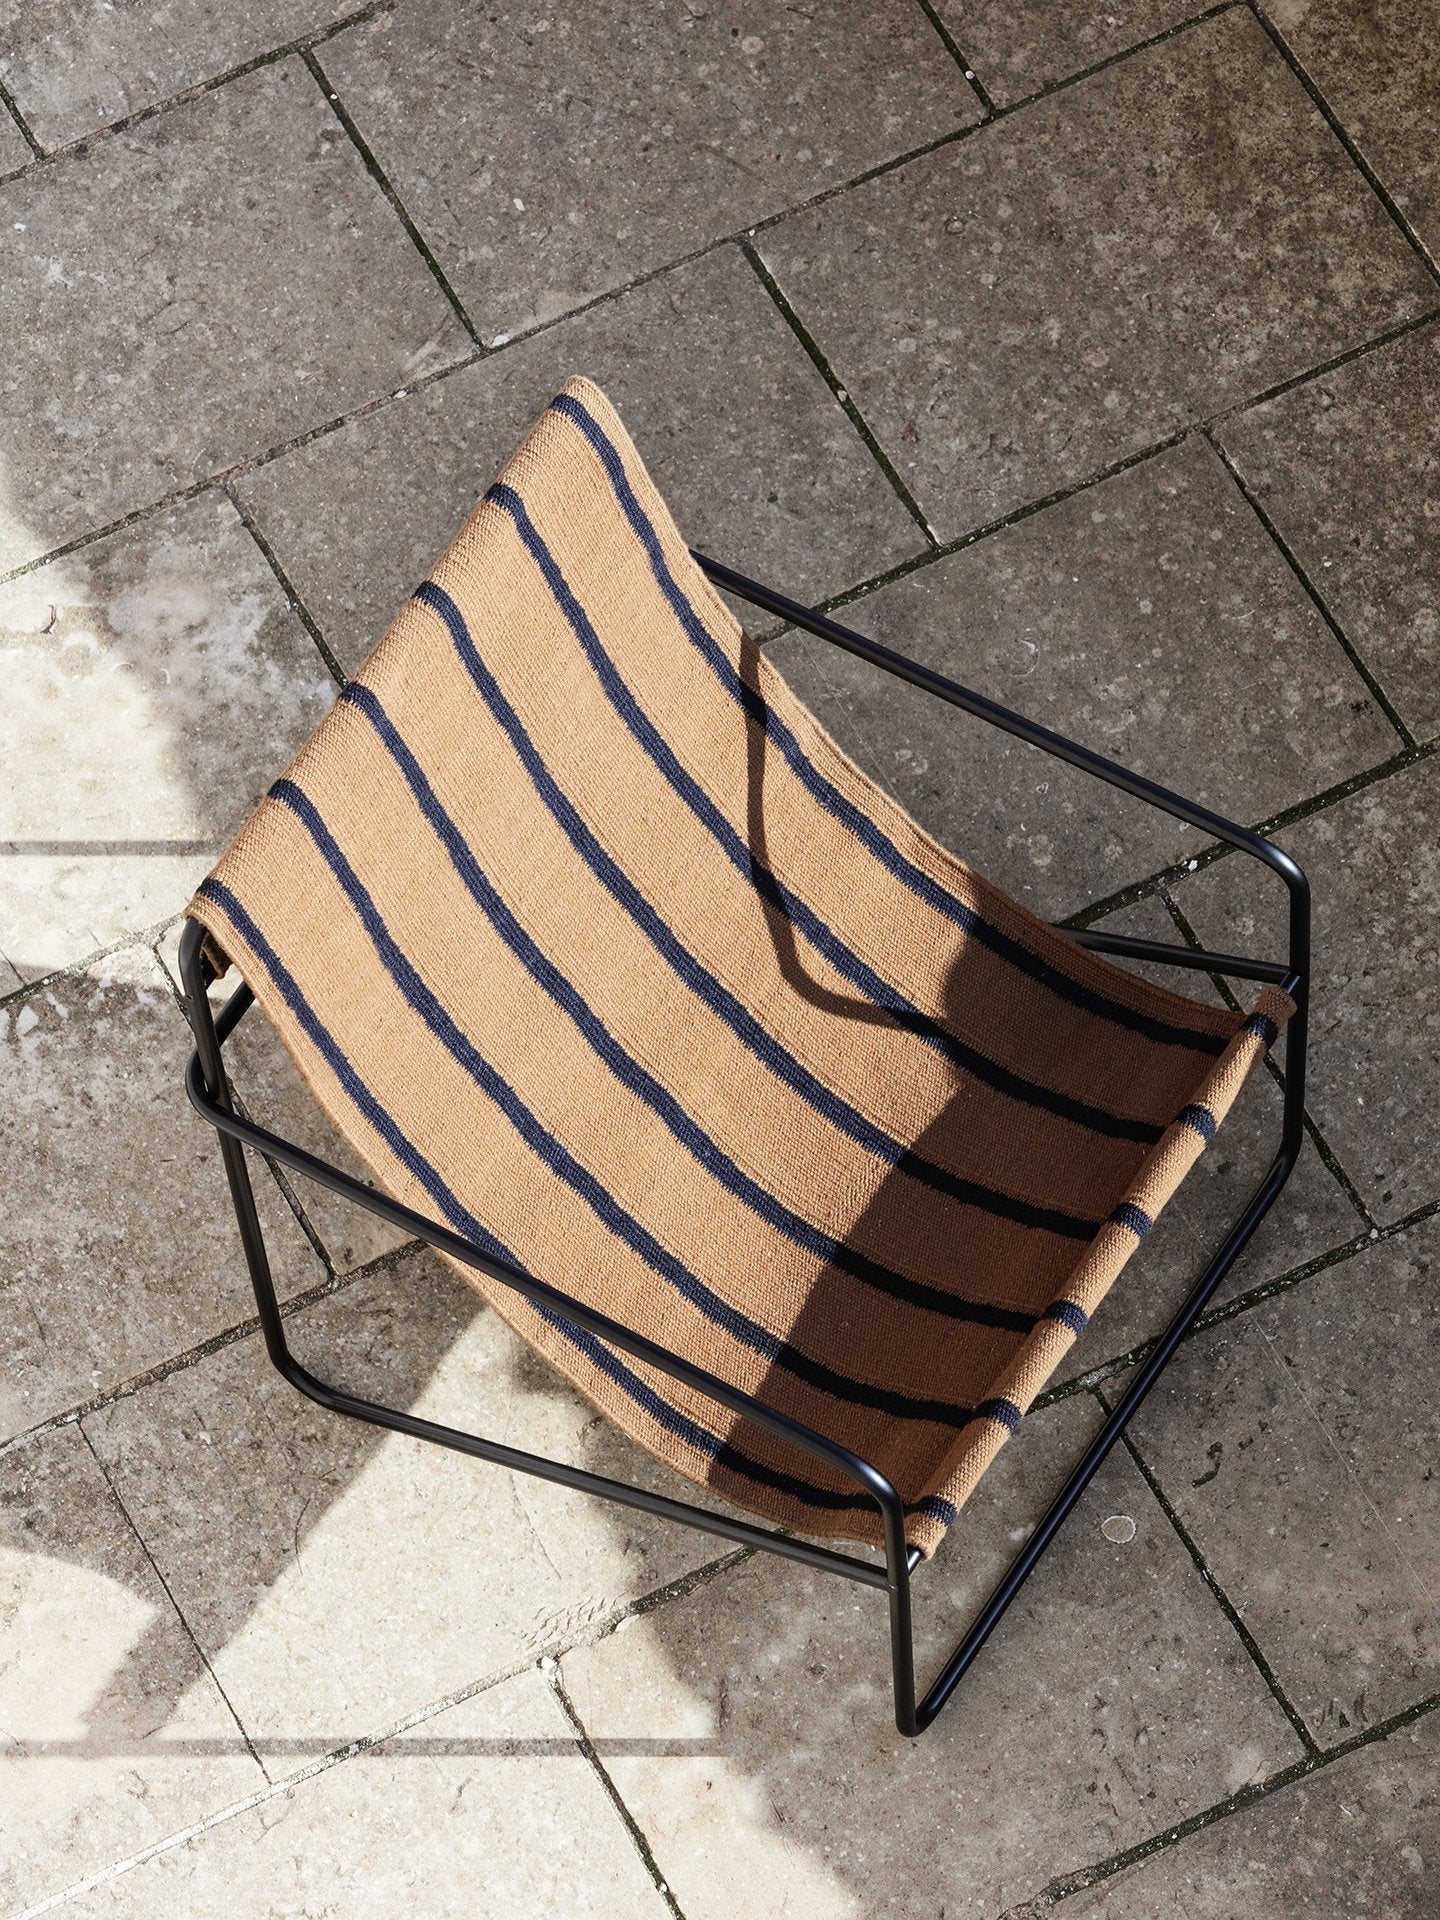 Ferm Living - Desert Lounge Chair in Black Stripes